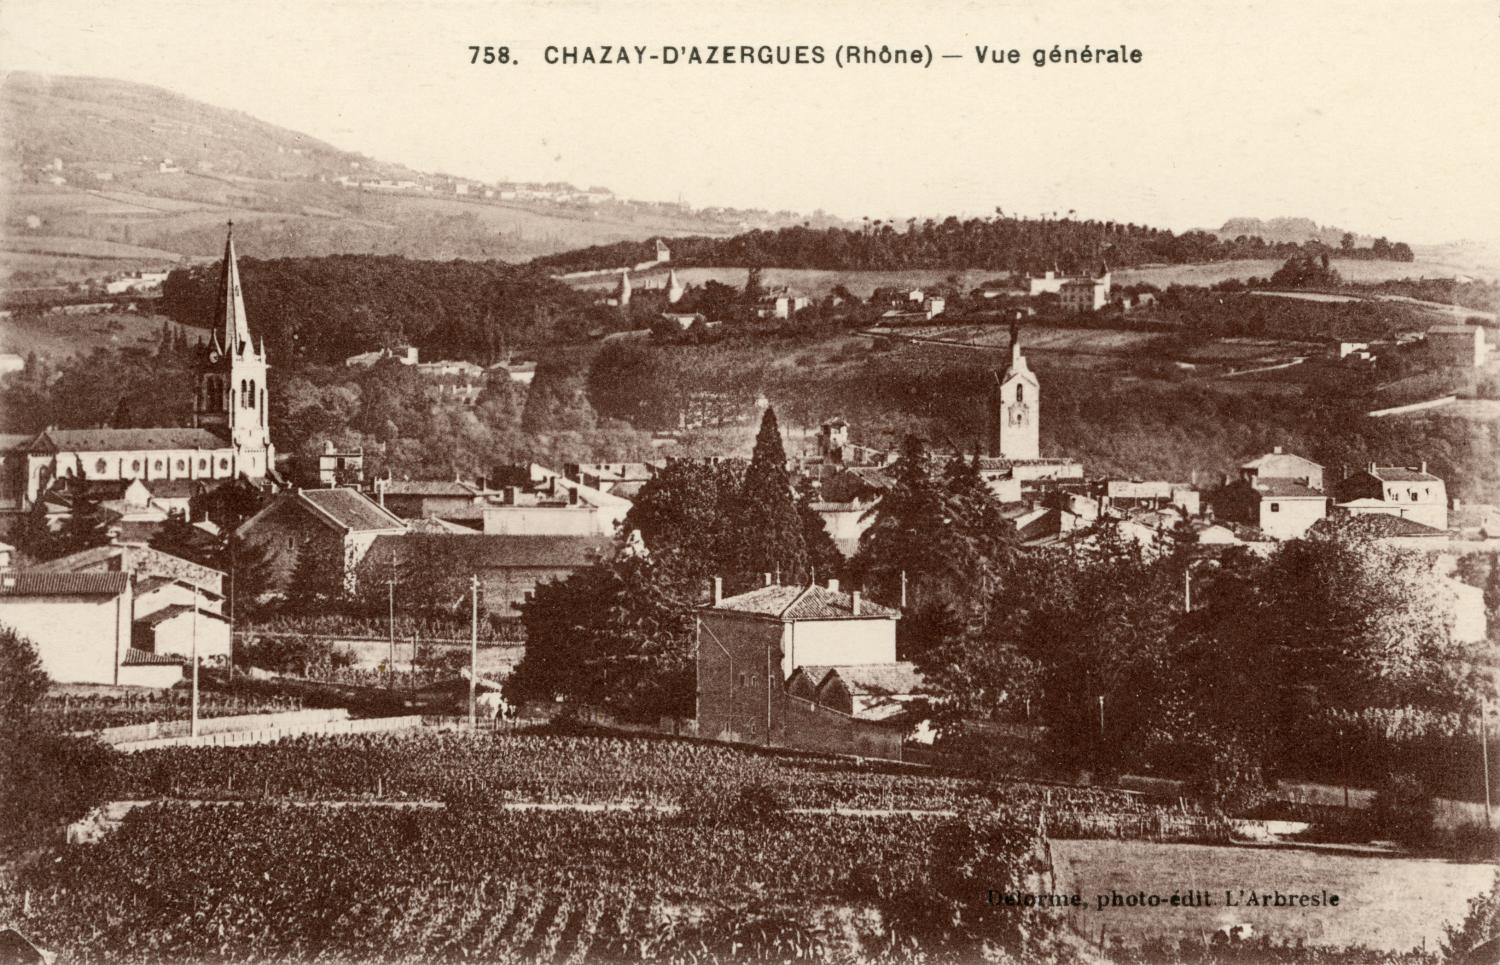 Chazay-d'Azergues (Rhône). - Vue générale